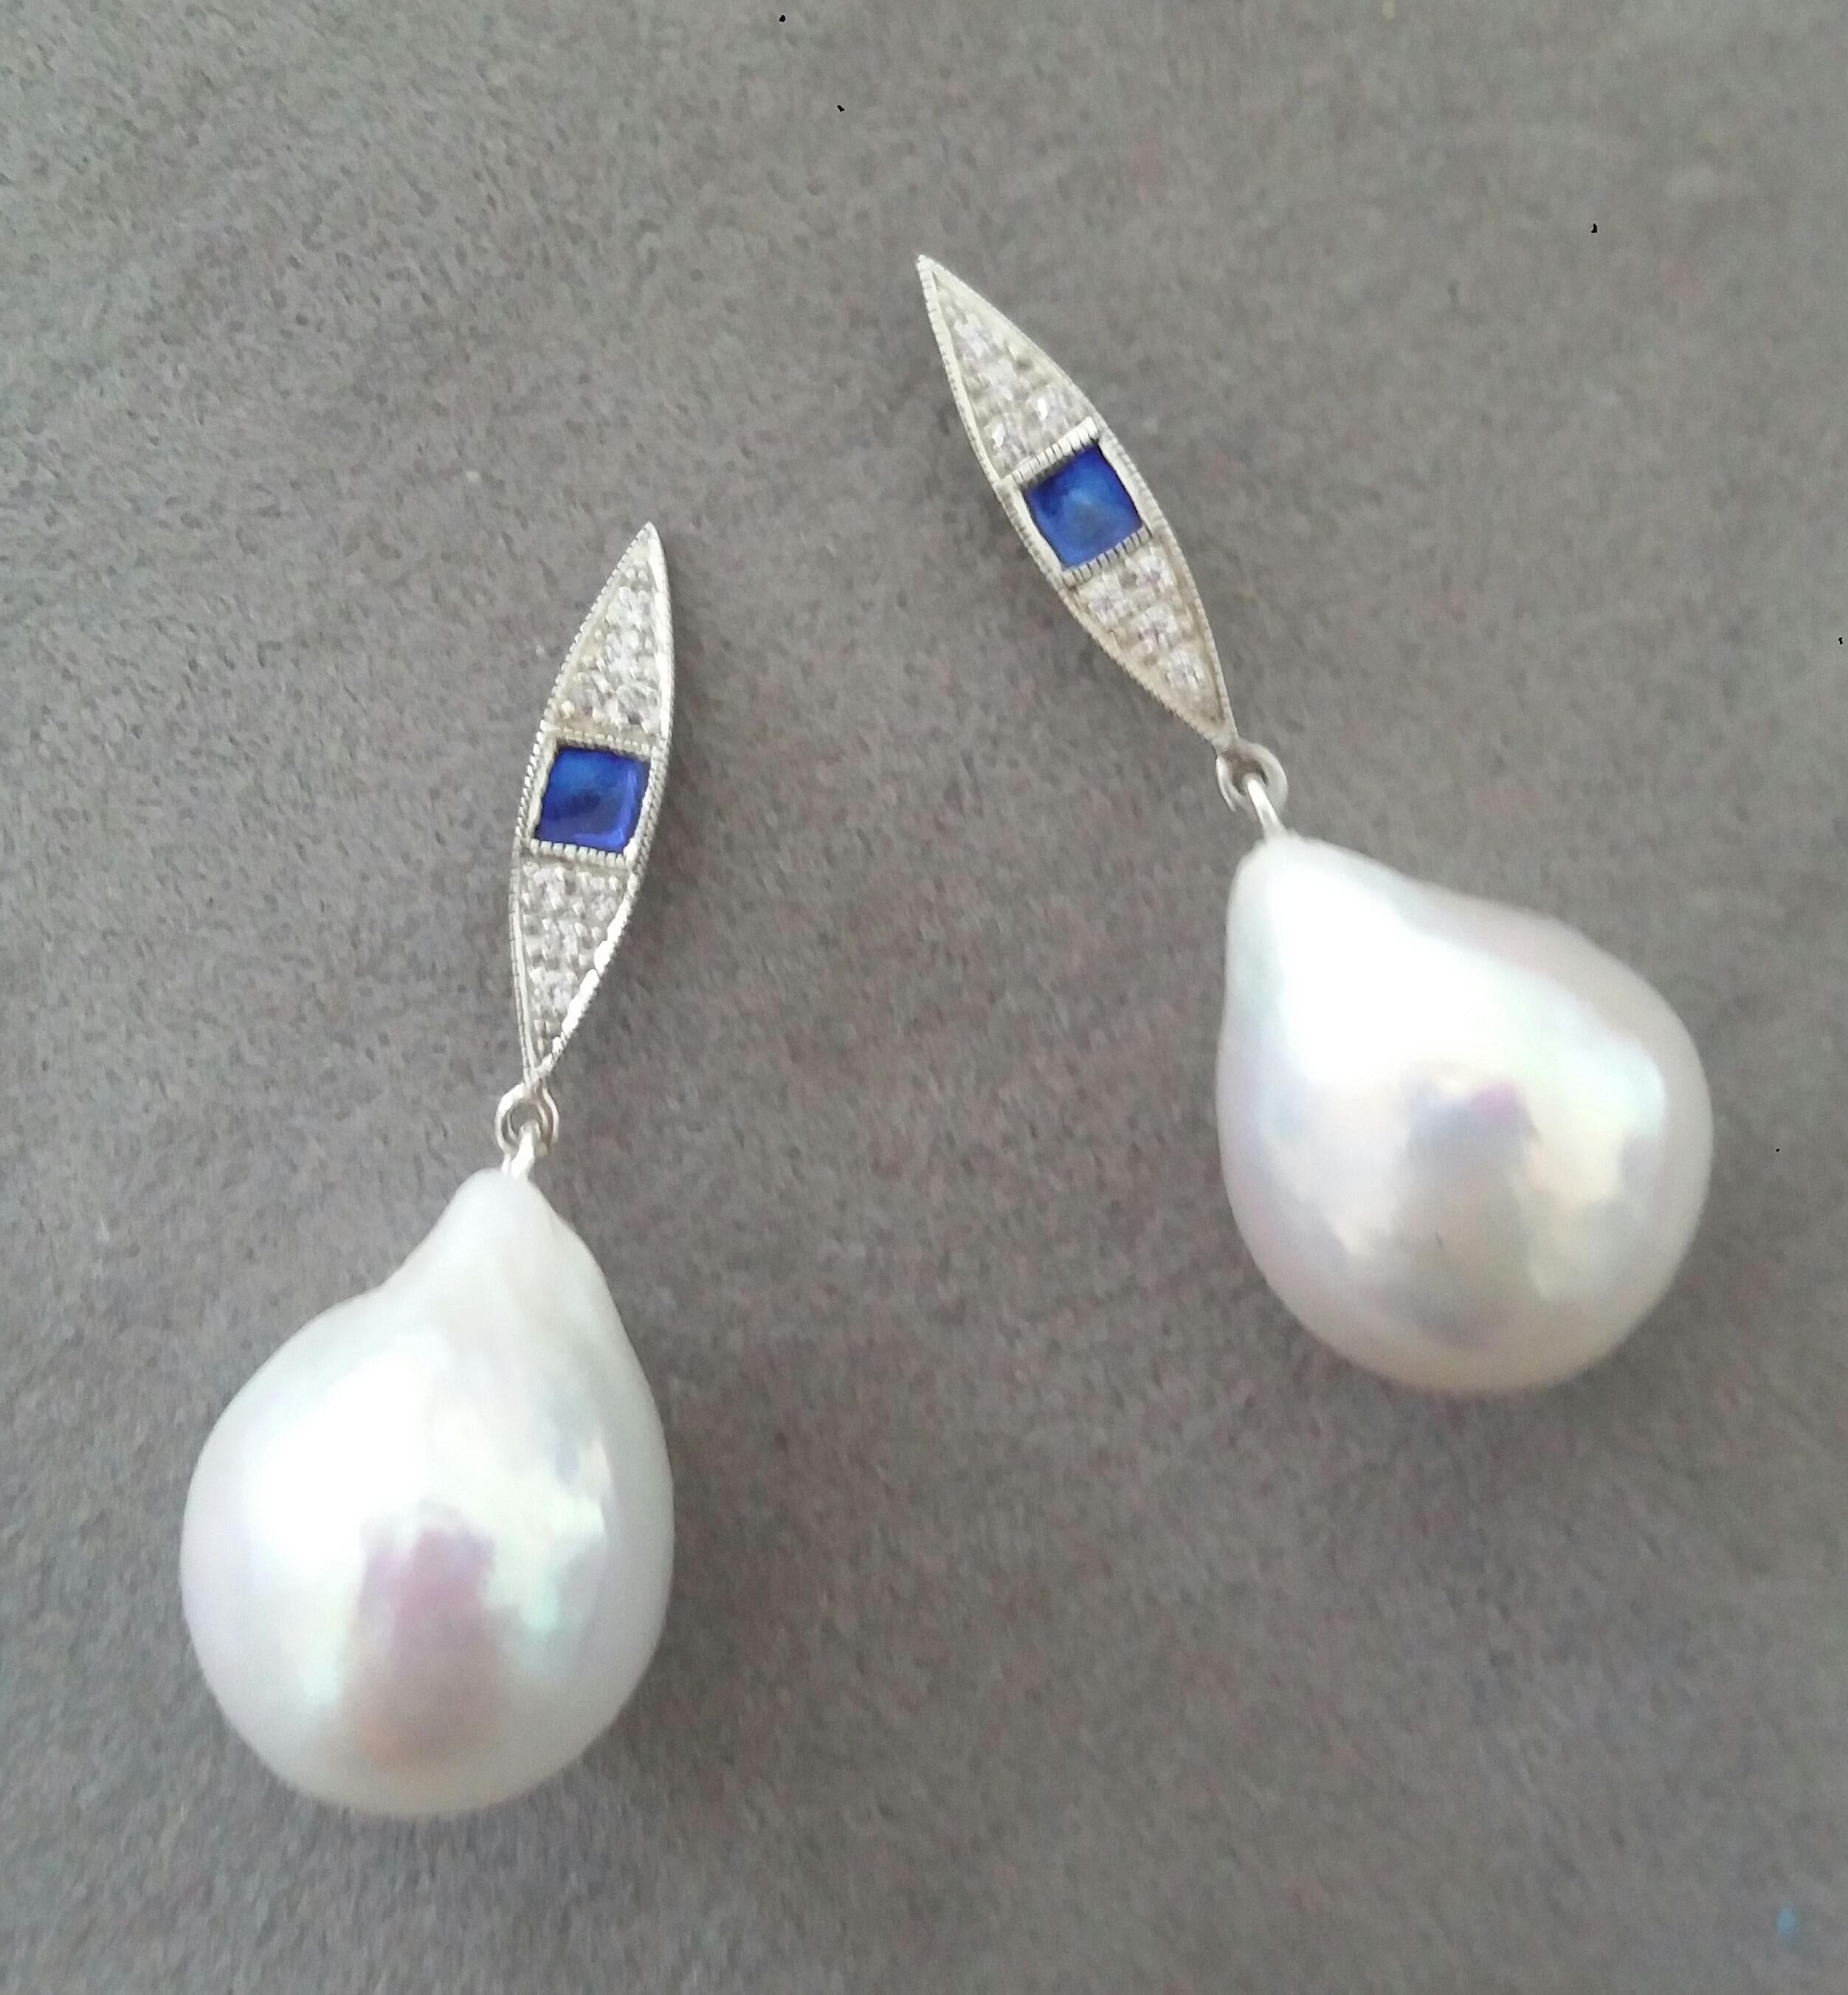 Pear Cut Art Deco Style Gold Diamonds Blue Enamel Pear Shape Baroque Pearls Earrings For Sale